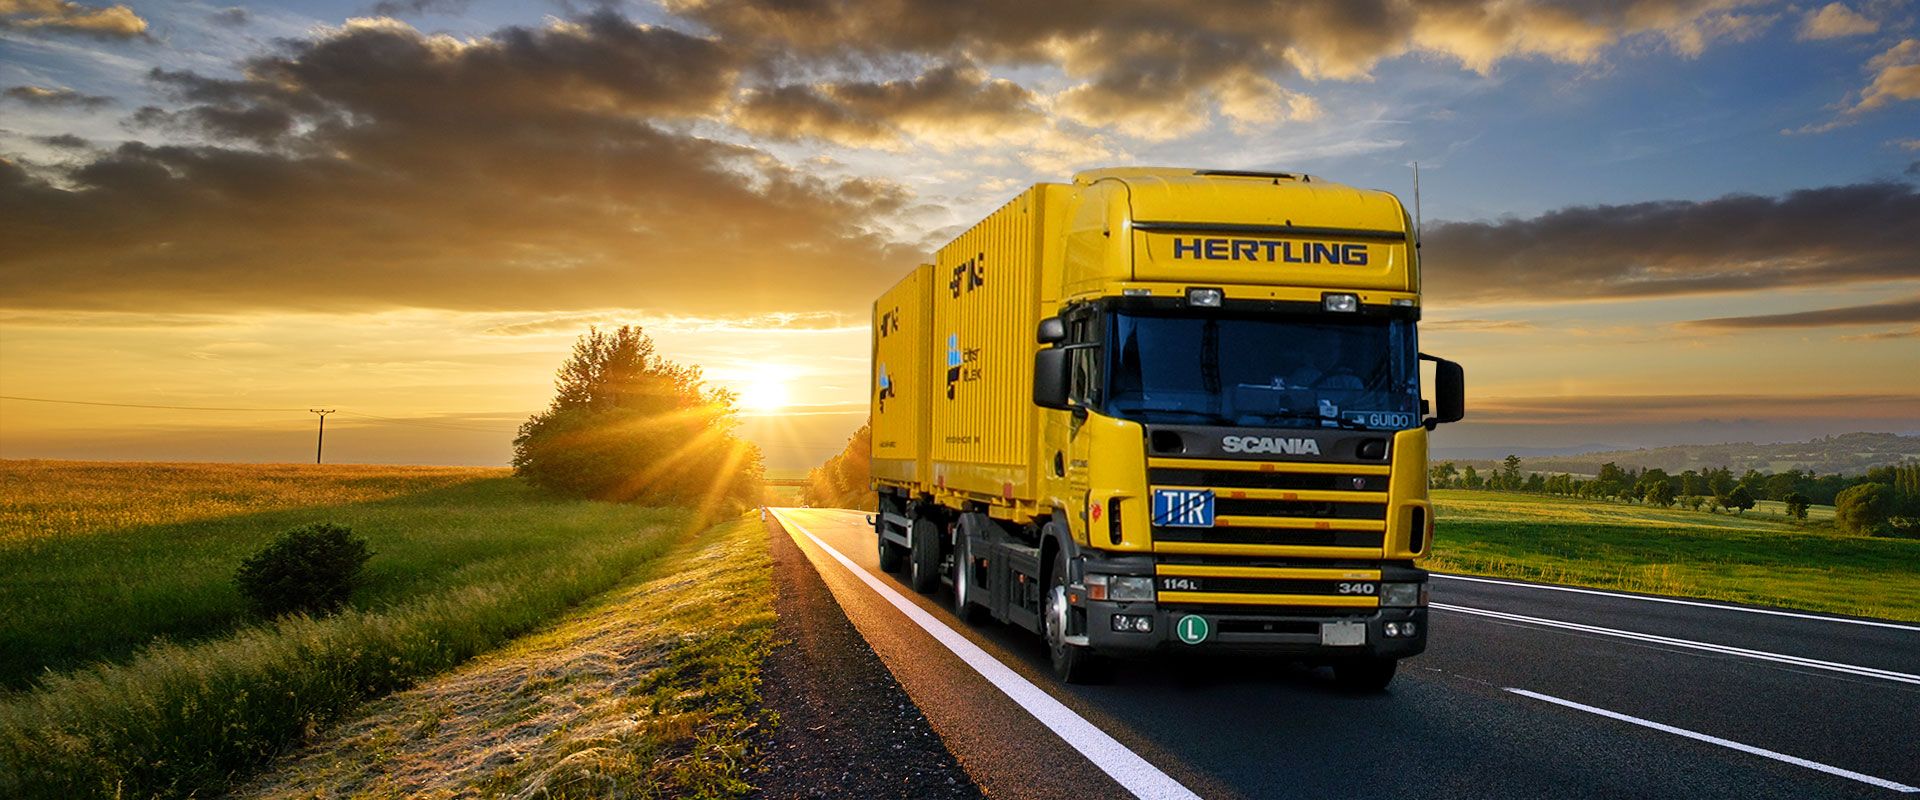 Hertling LKW für Umzüge in Deutschland, Europa und weltweit